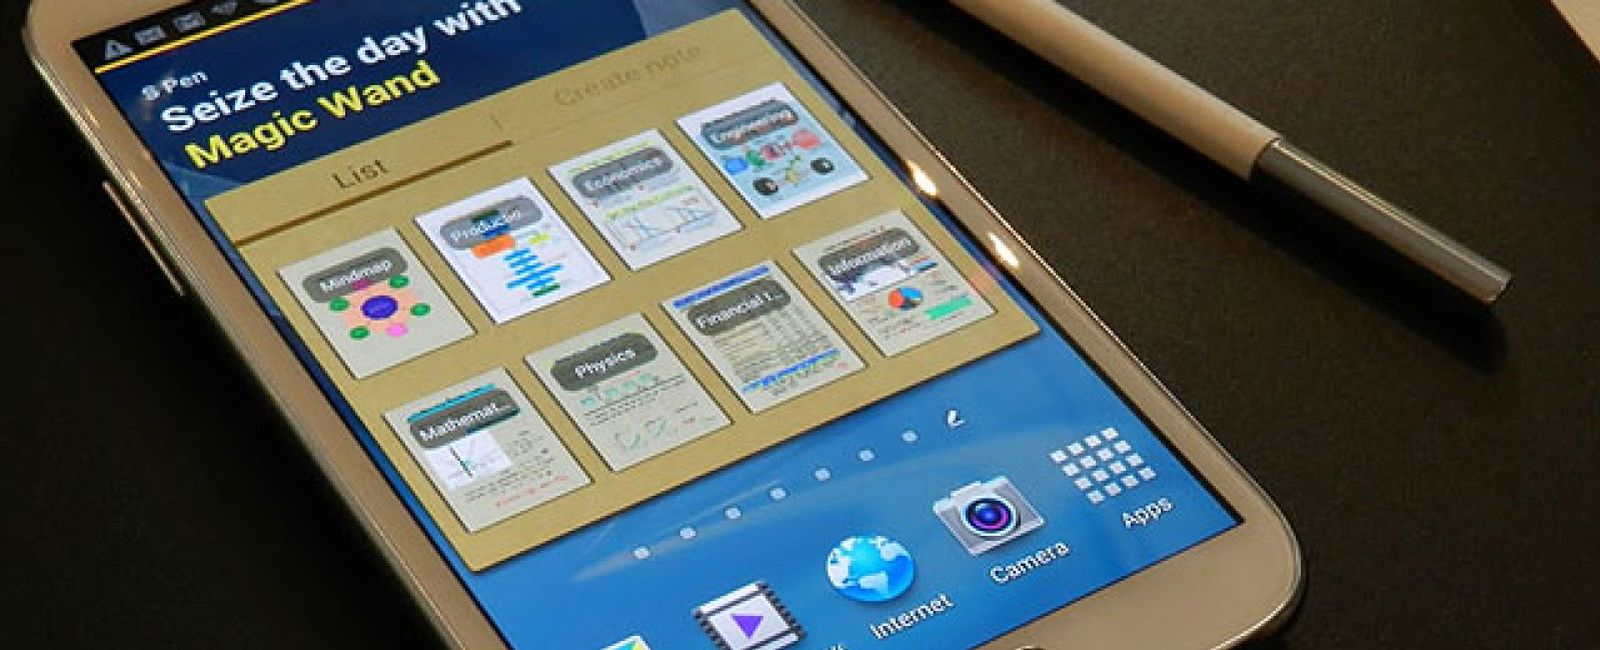 Foto: Samsung desafía al mercado y prepara un colosal Galaxy Note 3